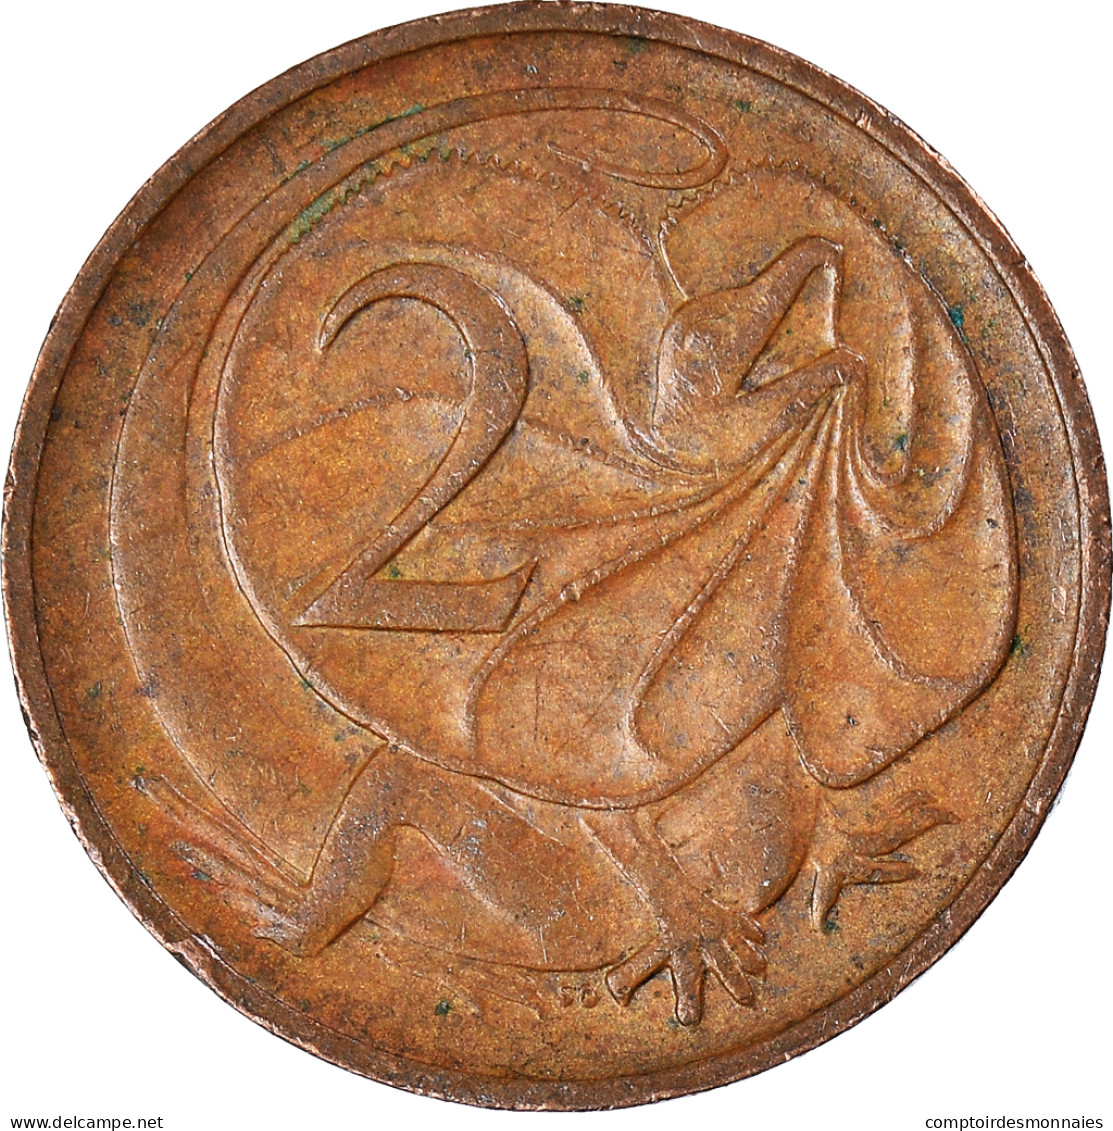 Monnaie, Australie, 2 Cents, 1974 - 2 Cents